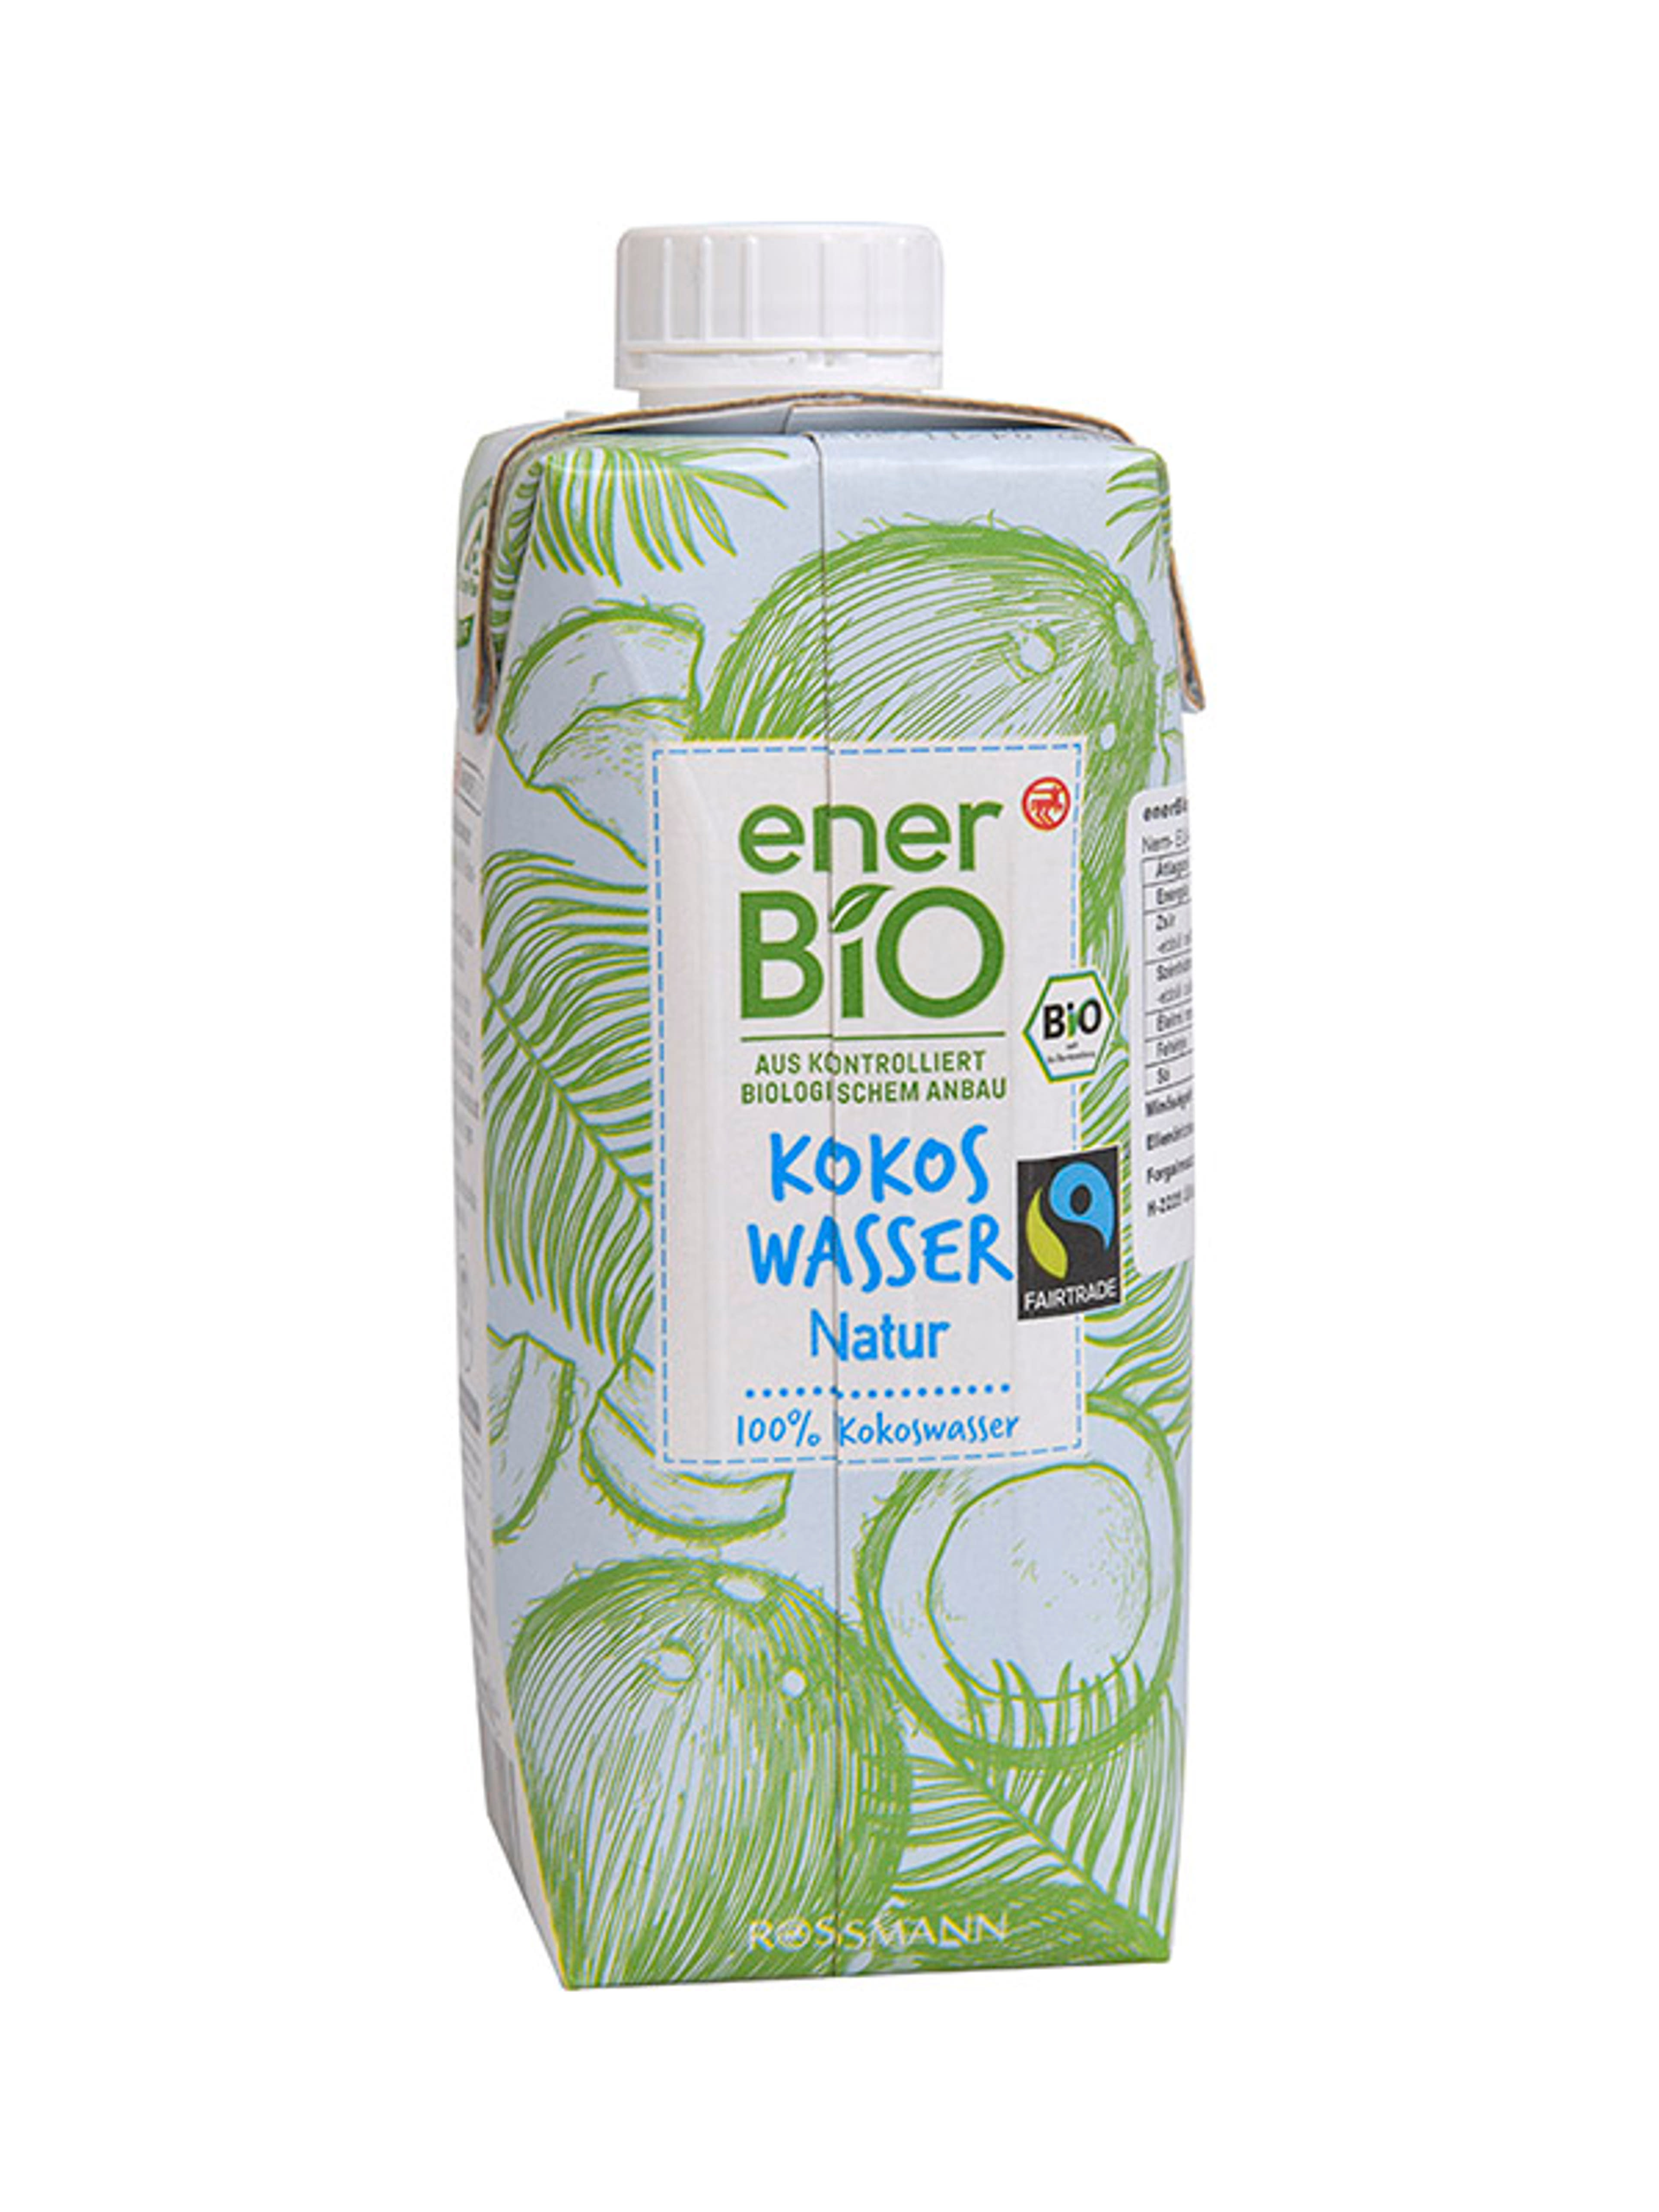 Ener-bio kókuszvíz natur - 330 ml
vegán
ellenőrzött biológiai gazdálkodásból-1